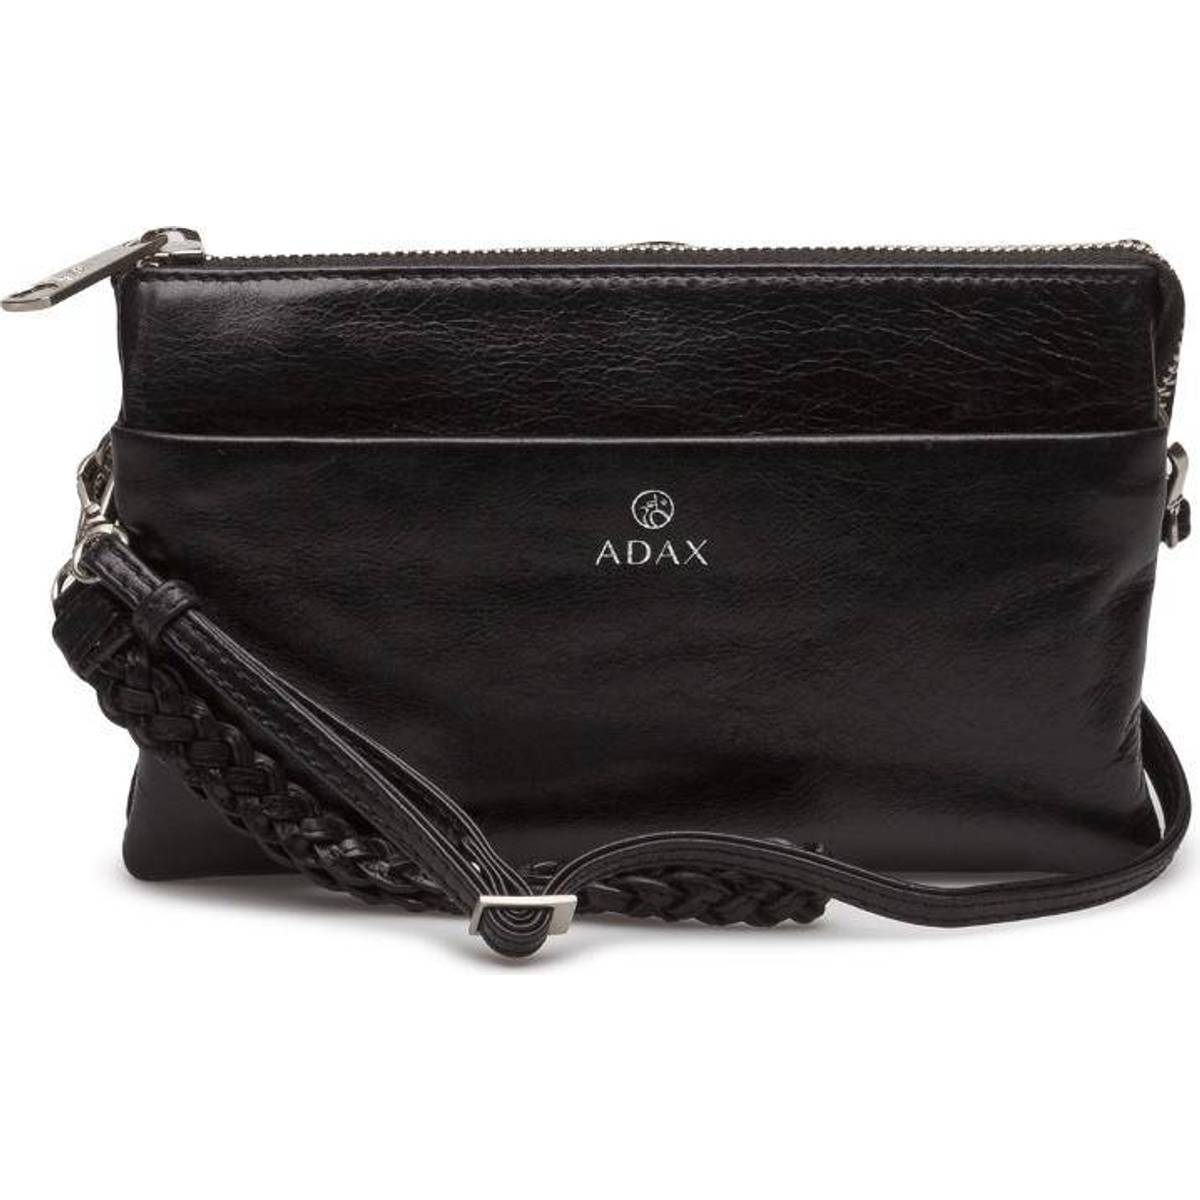 Adax clutch sort tasker • Find billigste pris hos PriceRunner nu »